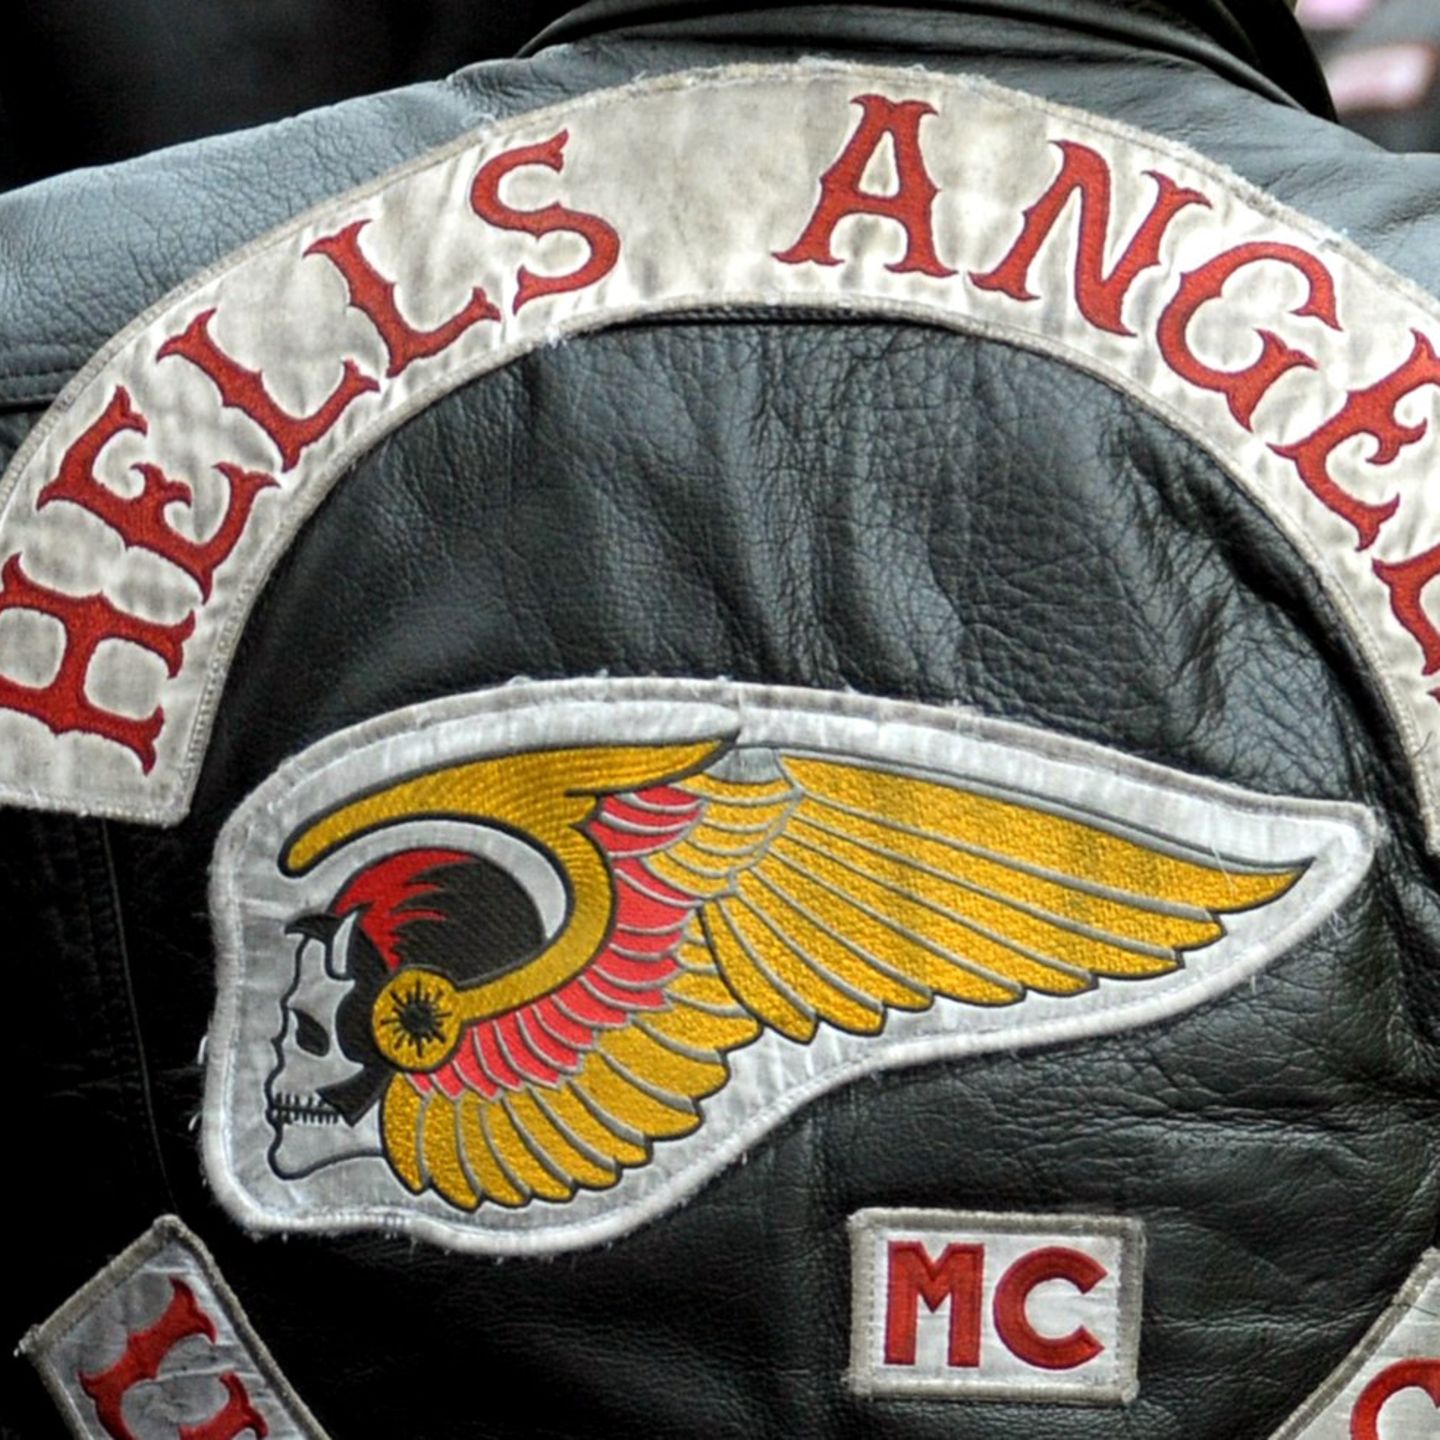 Hells Angels bekommen von Online-Händler 78.000 Dollar Schadenersatz